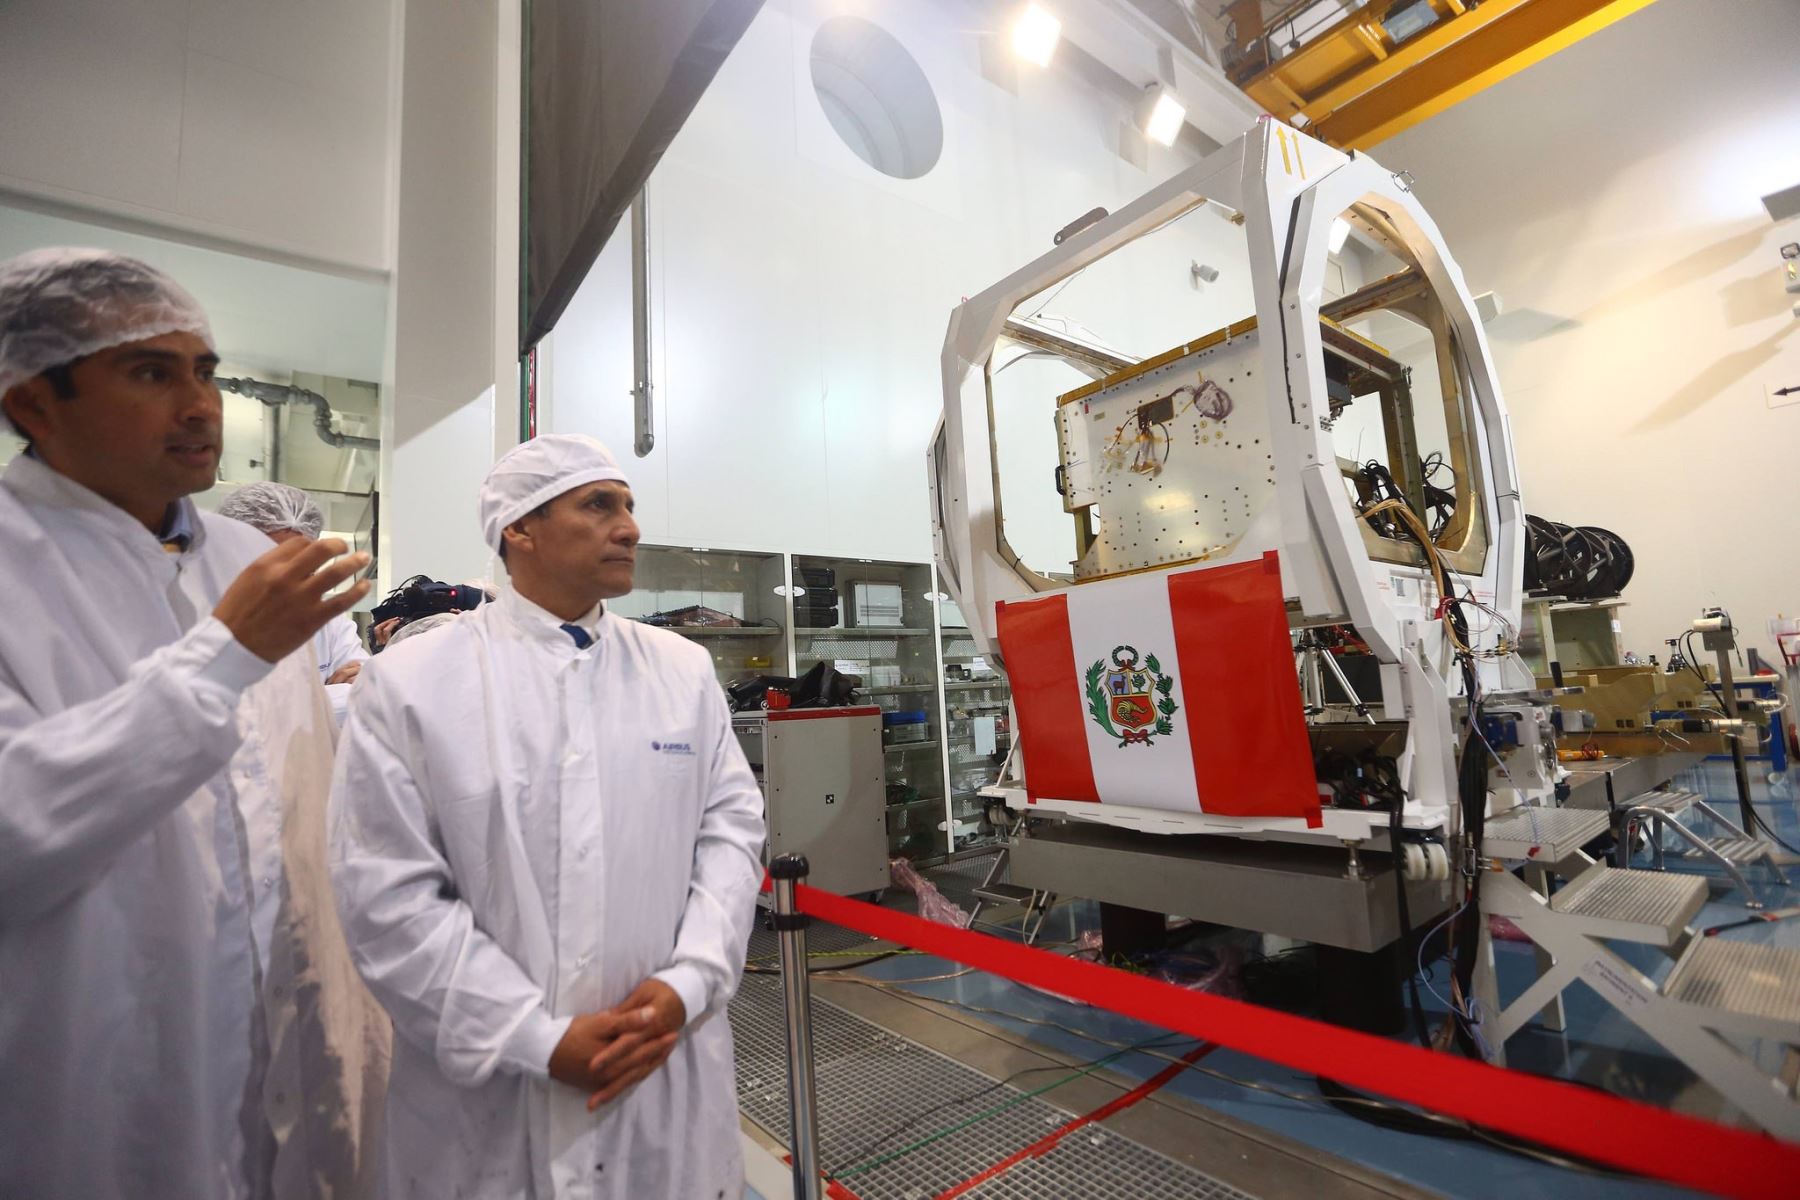 Visita de inspección a la construcción del primer satélite peruano realizó el presidente Ollanta Humala en las instalaciones de la empresa AirBus en la ciudad de Toulouse